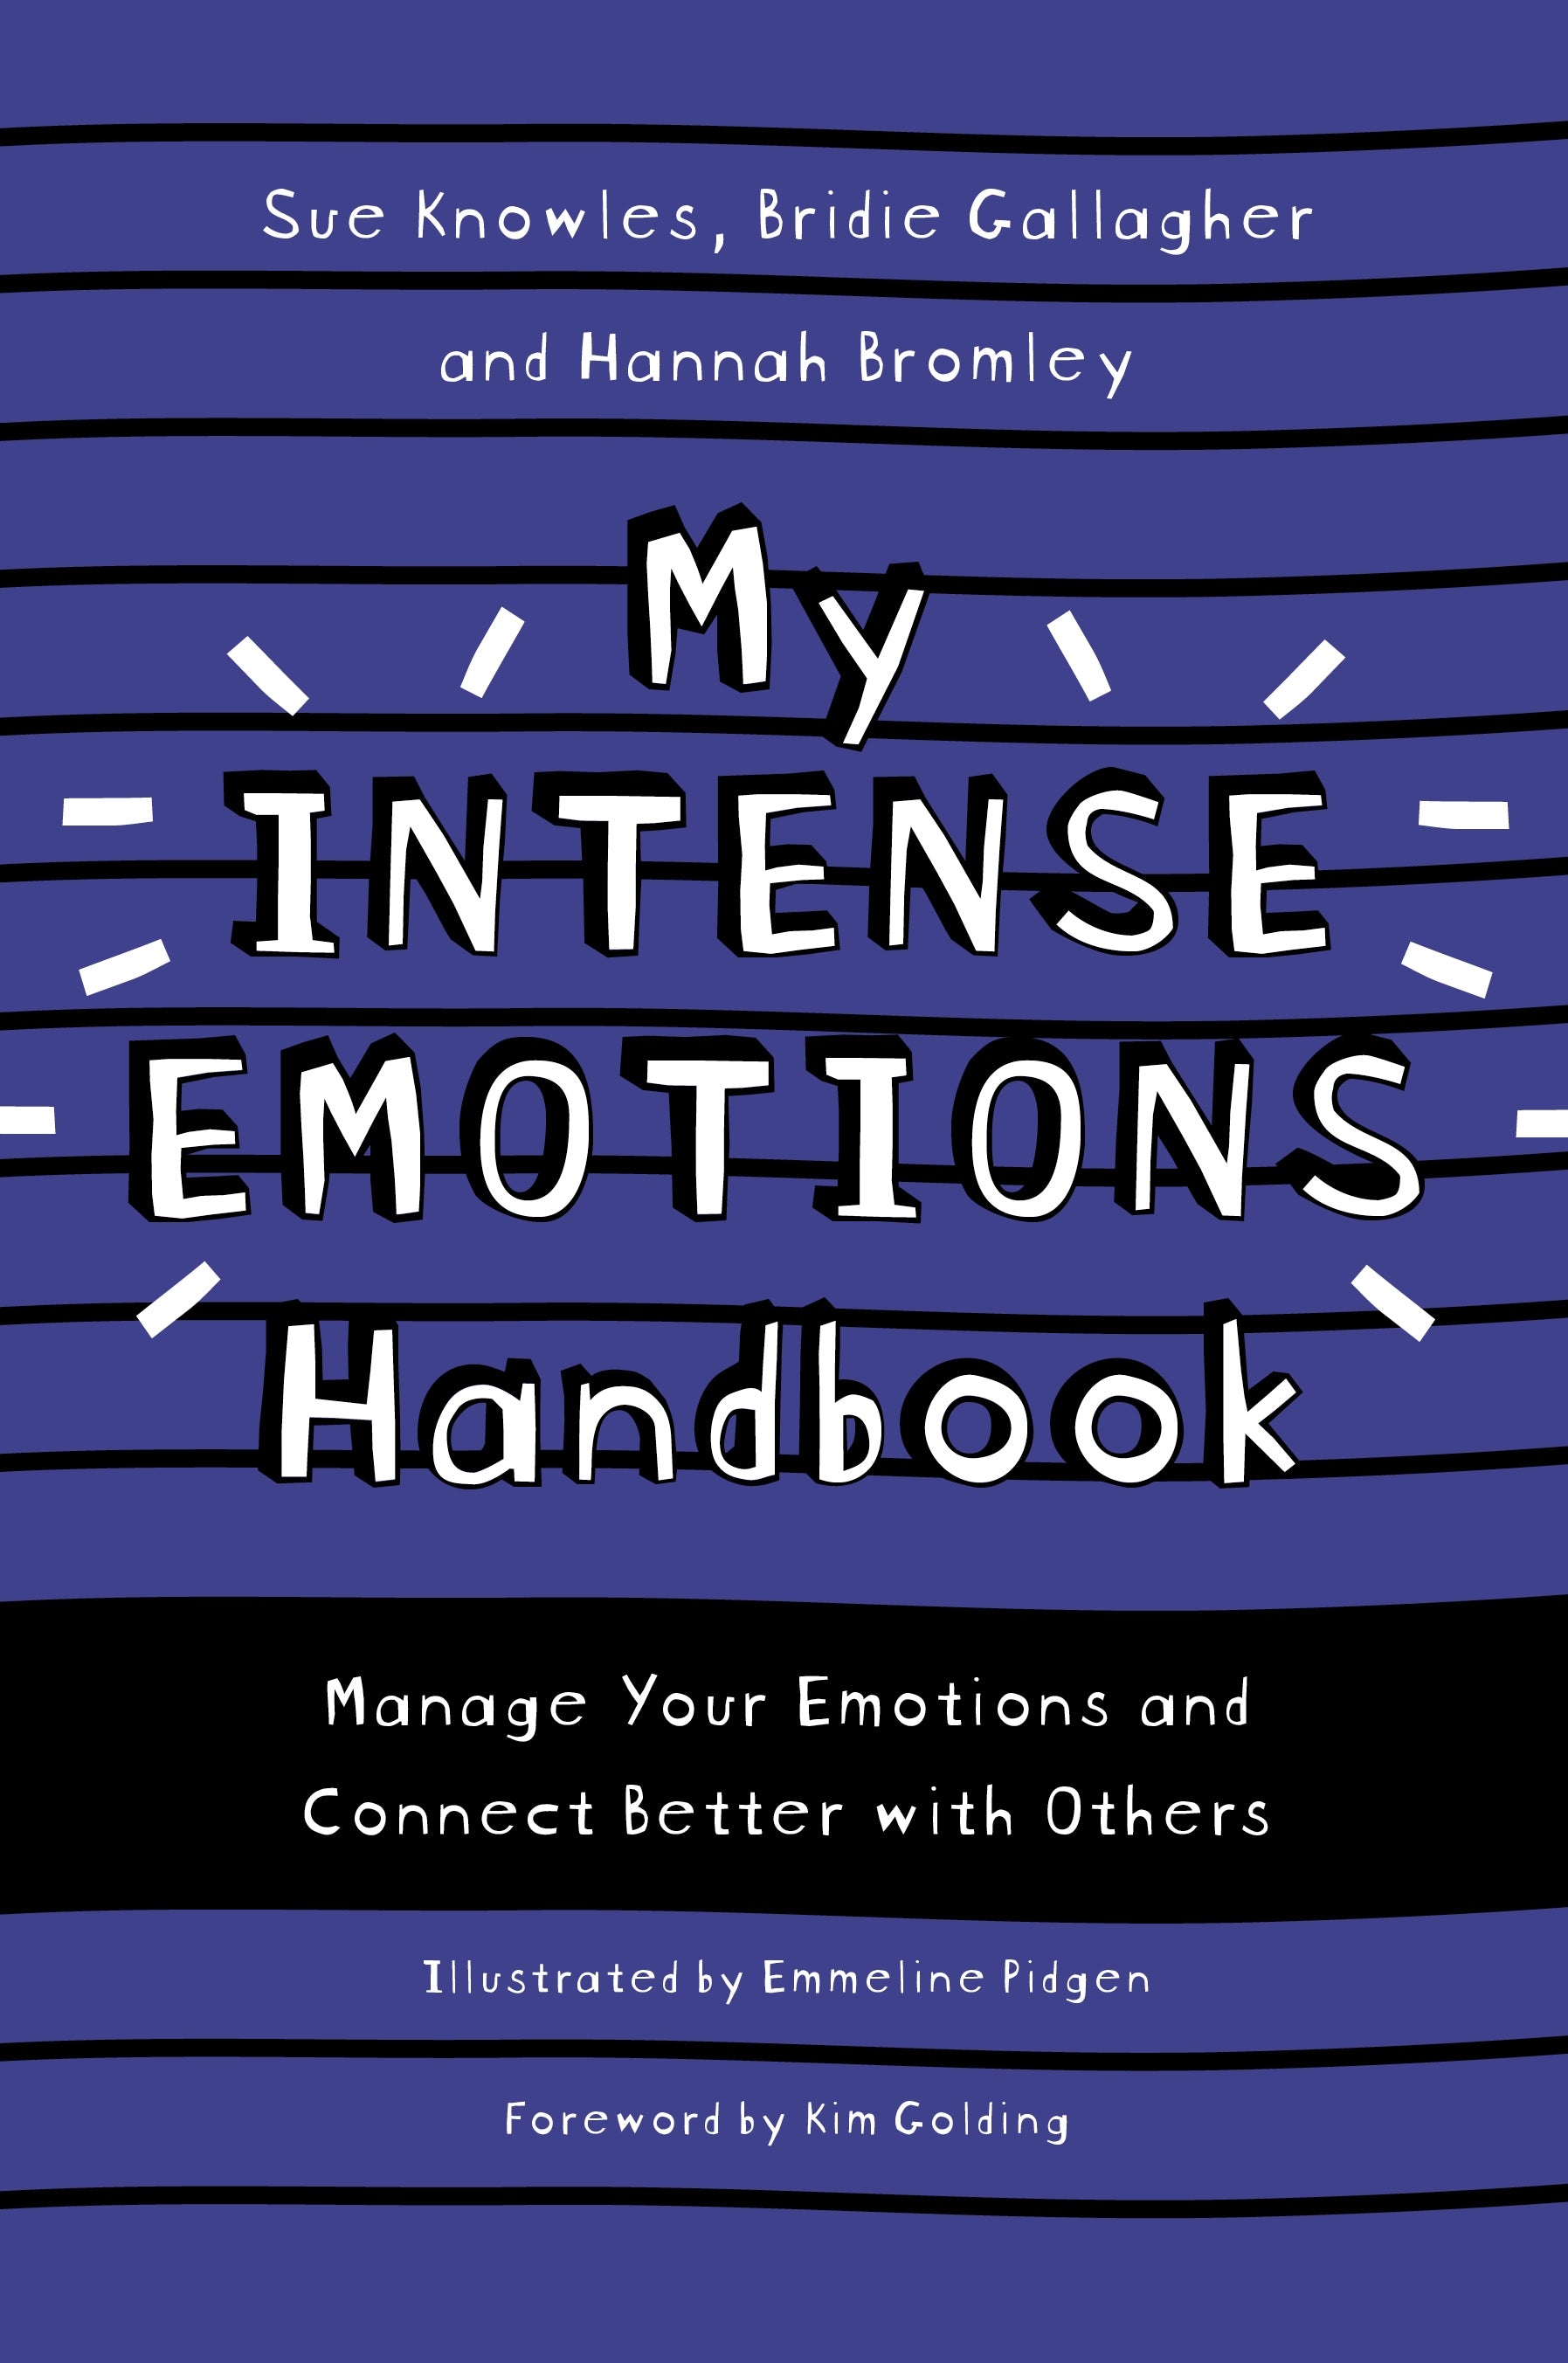 My Intense Emotions Handbook by Kim S. Golding, Emmeline Pidgen, Sue Knowles, Bridie Gallagher, Hannah Bromley